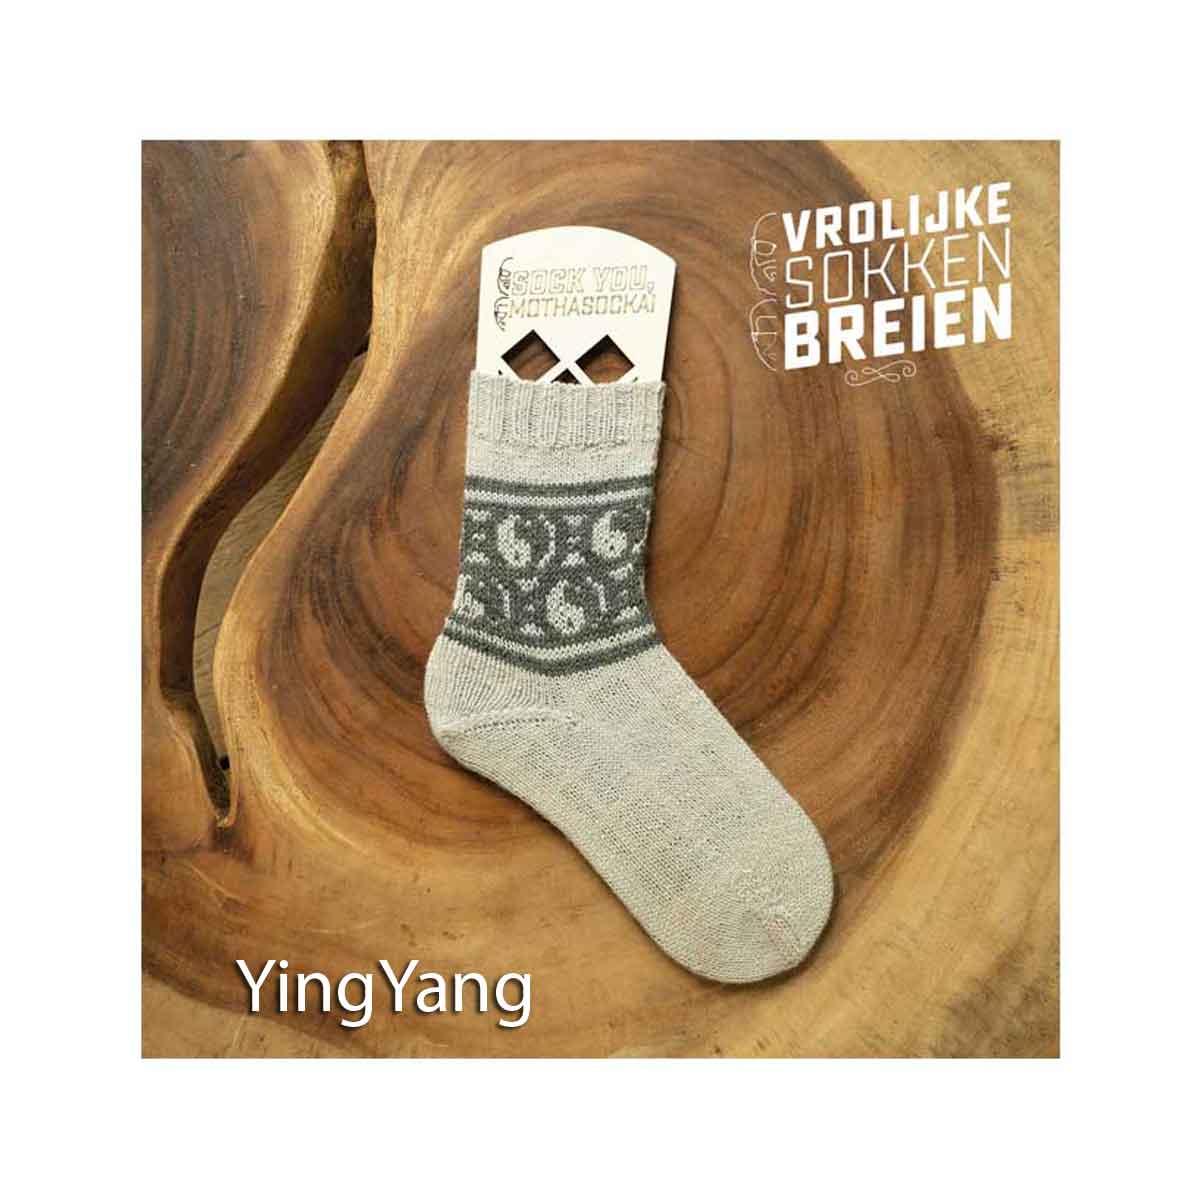 vrolijke sokken breien yinyan